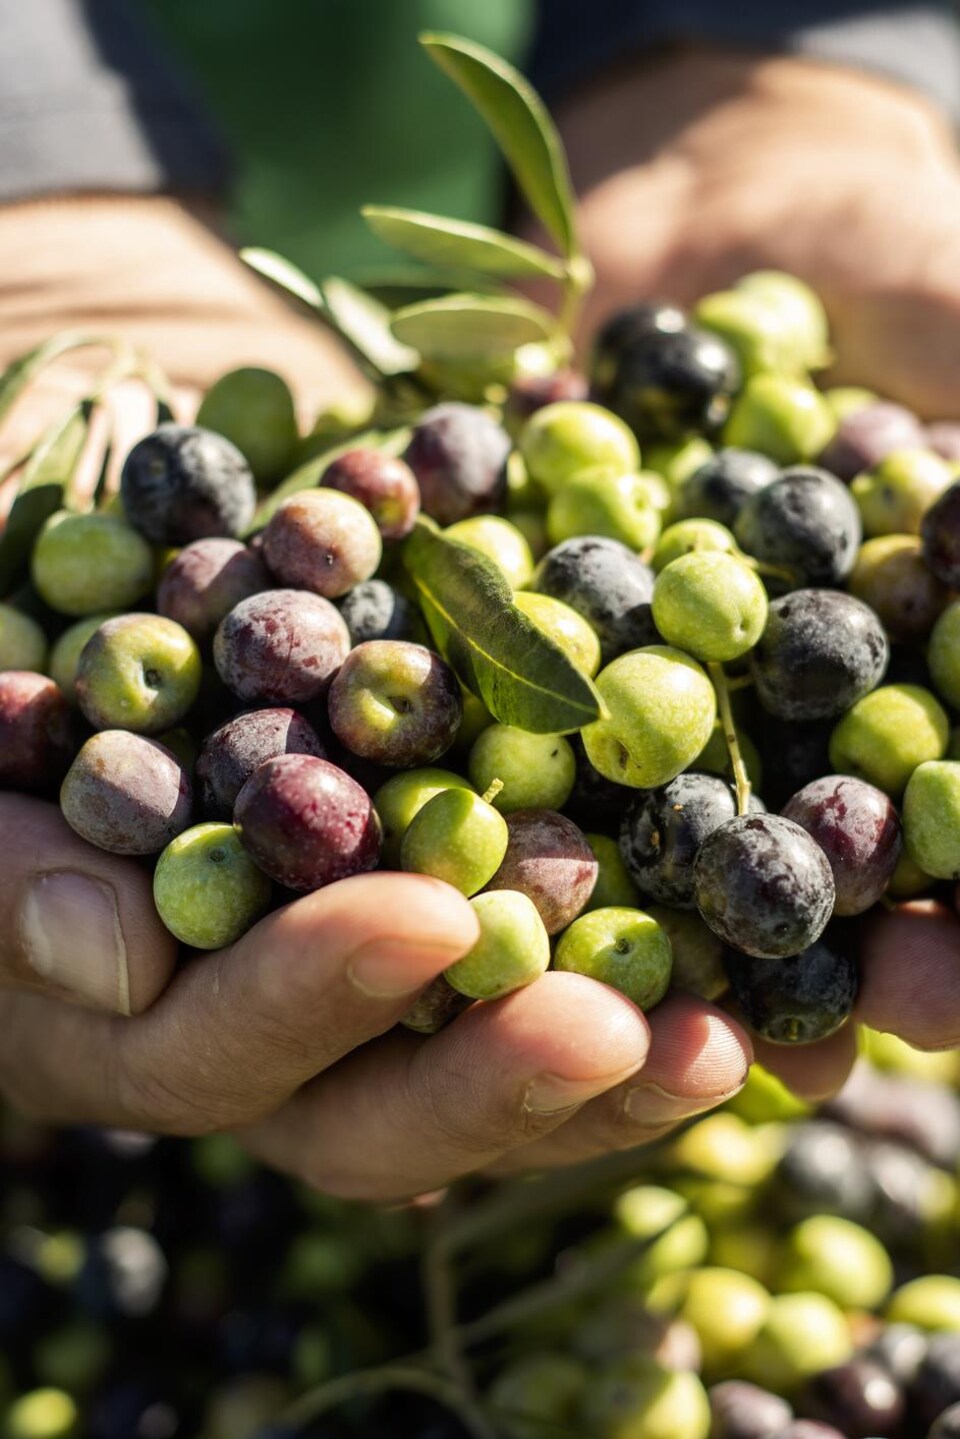 Des olives vertes et noires.